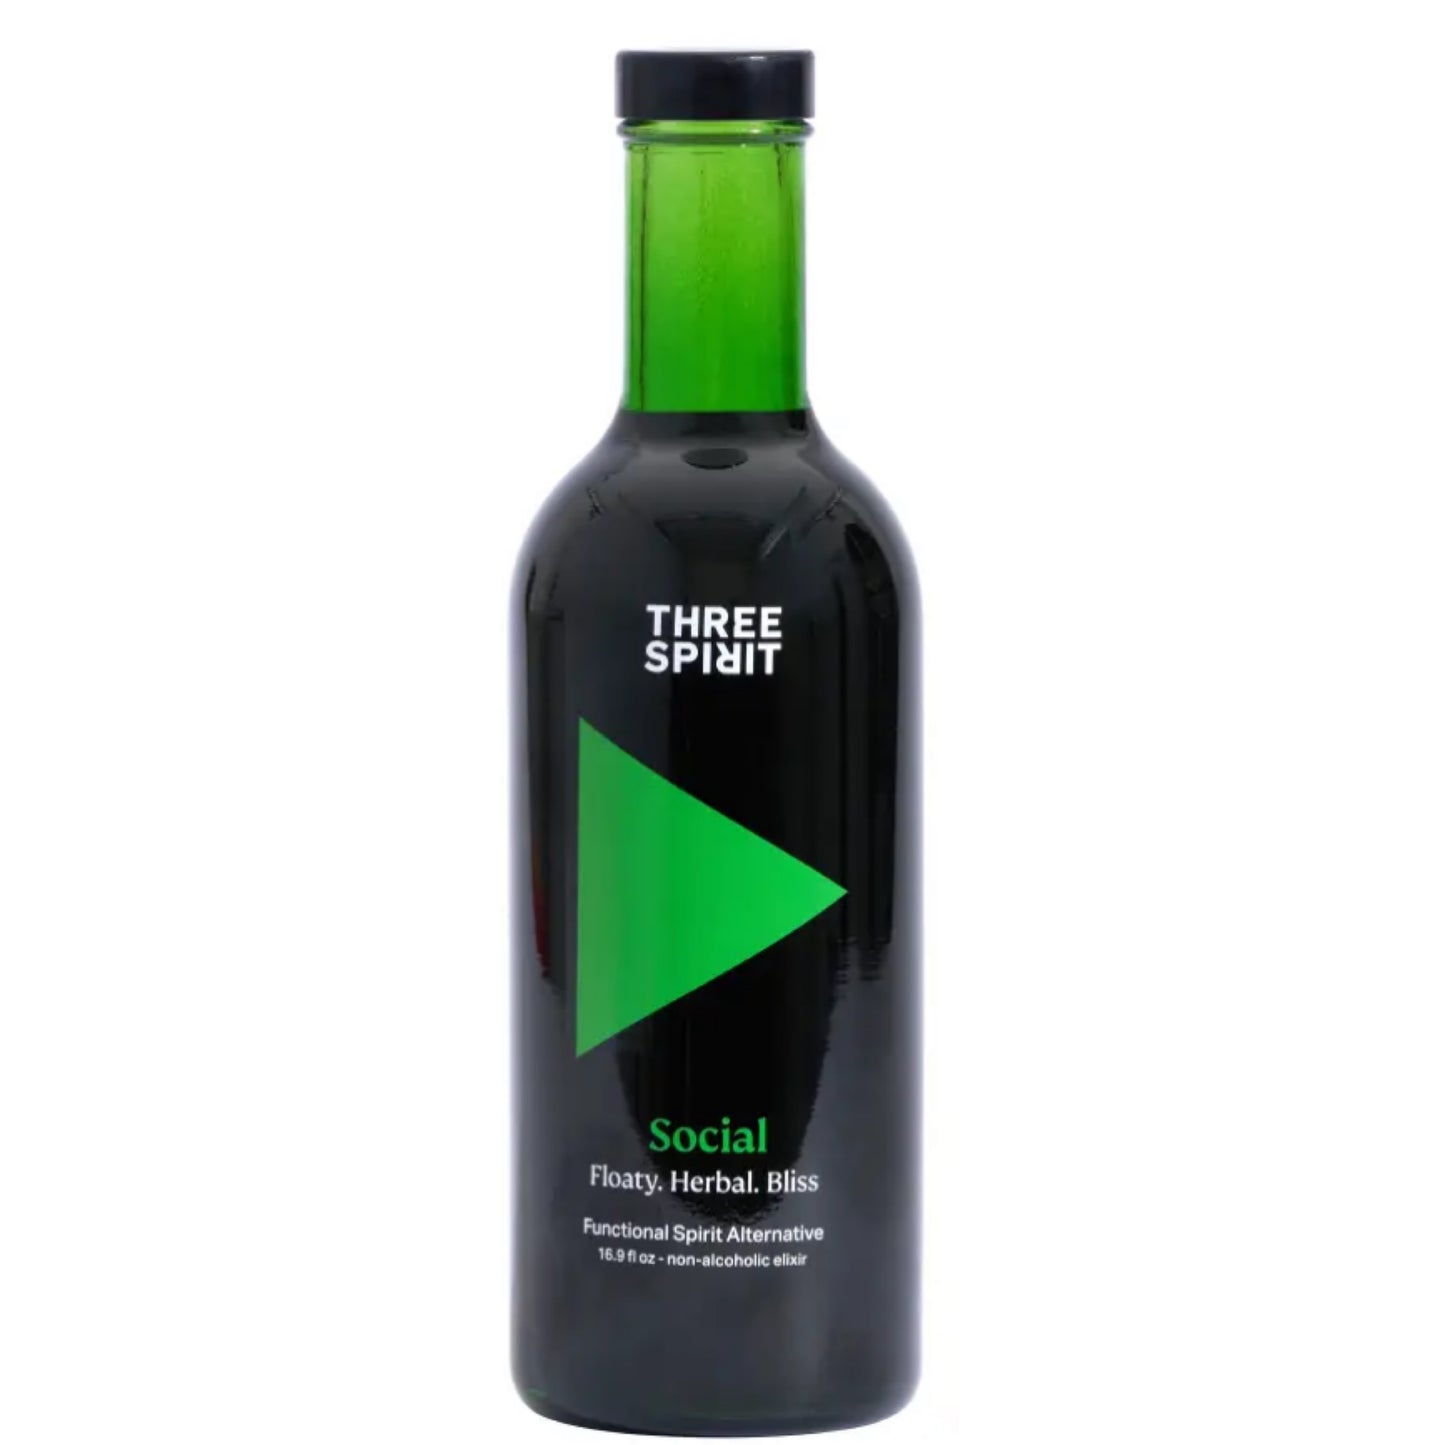 Three Spirits Social Elixir